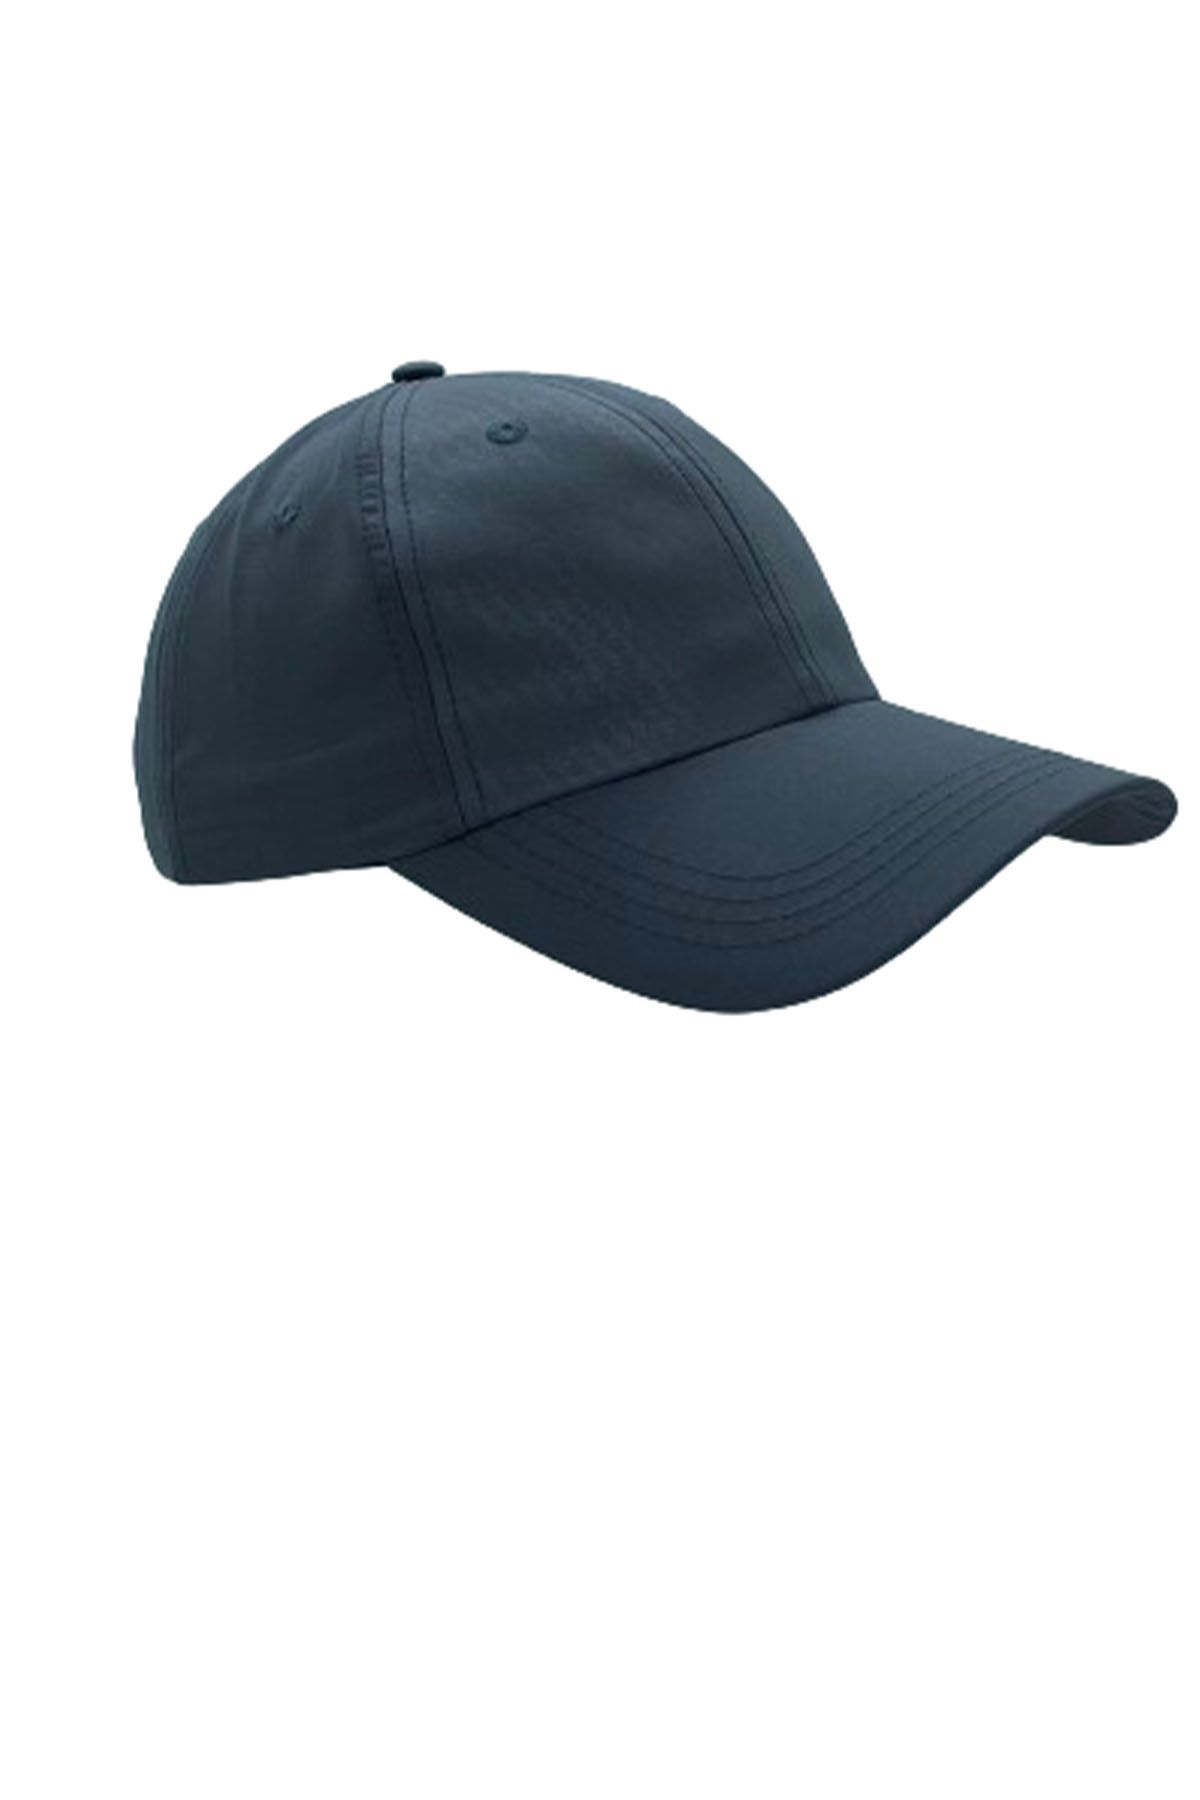 Hoppe Yazlık 6 Parçalı Amerikan Beyzbol Kep Şapka